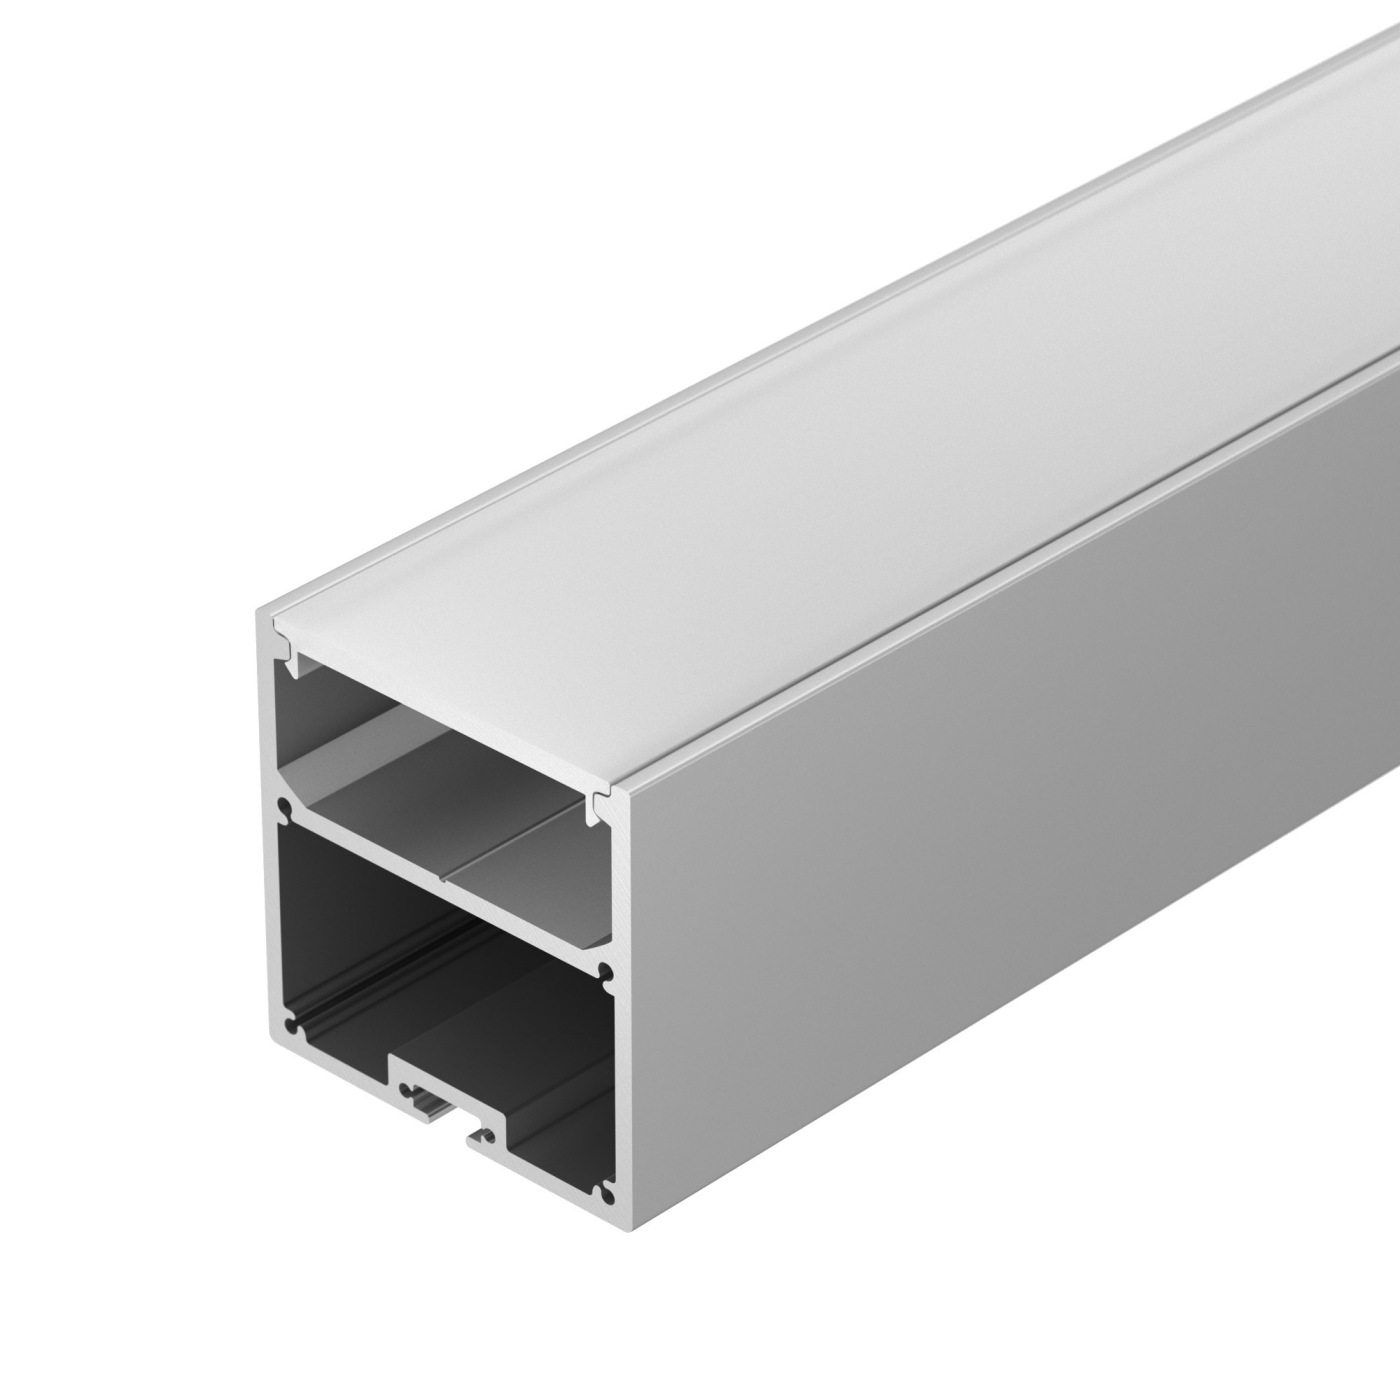 Профиль SL-LINE-5050-2000 ANOD профиль алюминиевый накладной подвесной с отсеком для бп серебро cab267